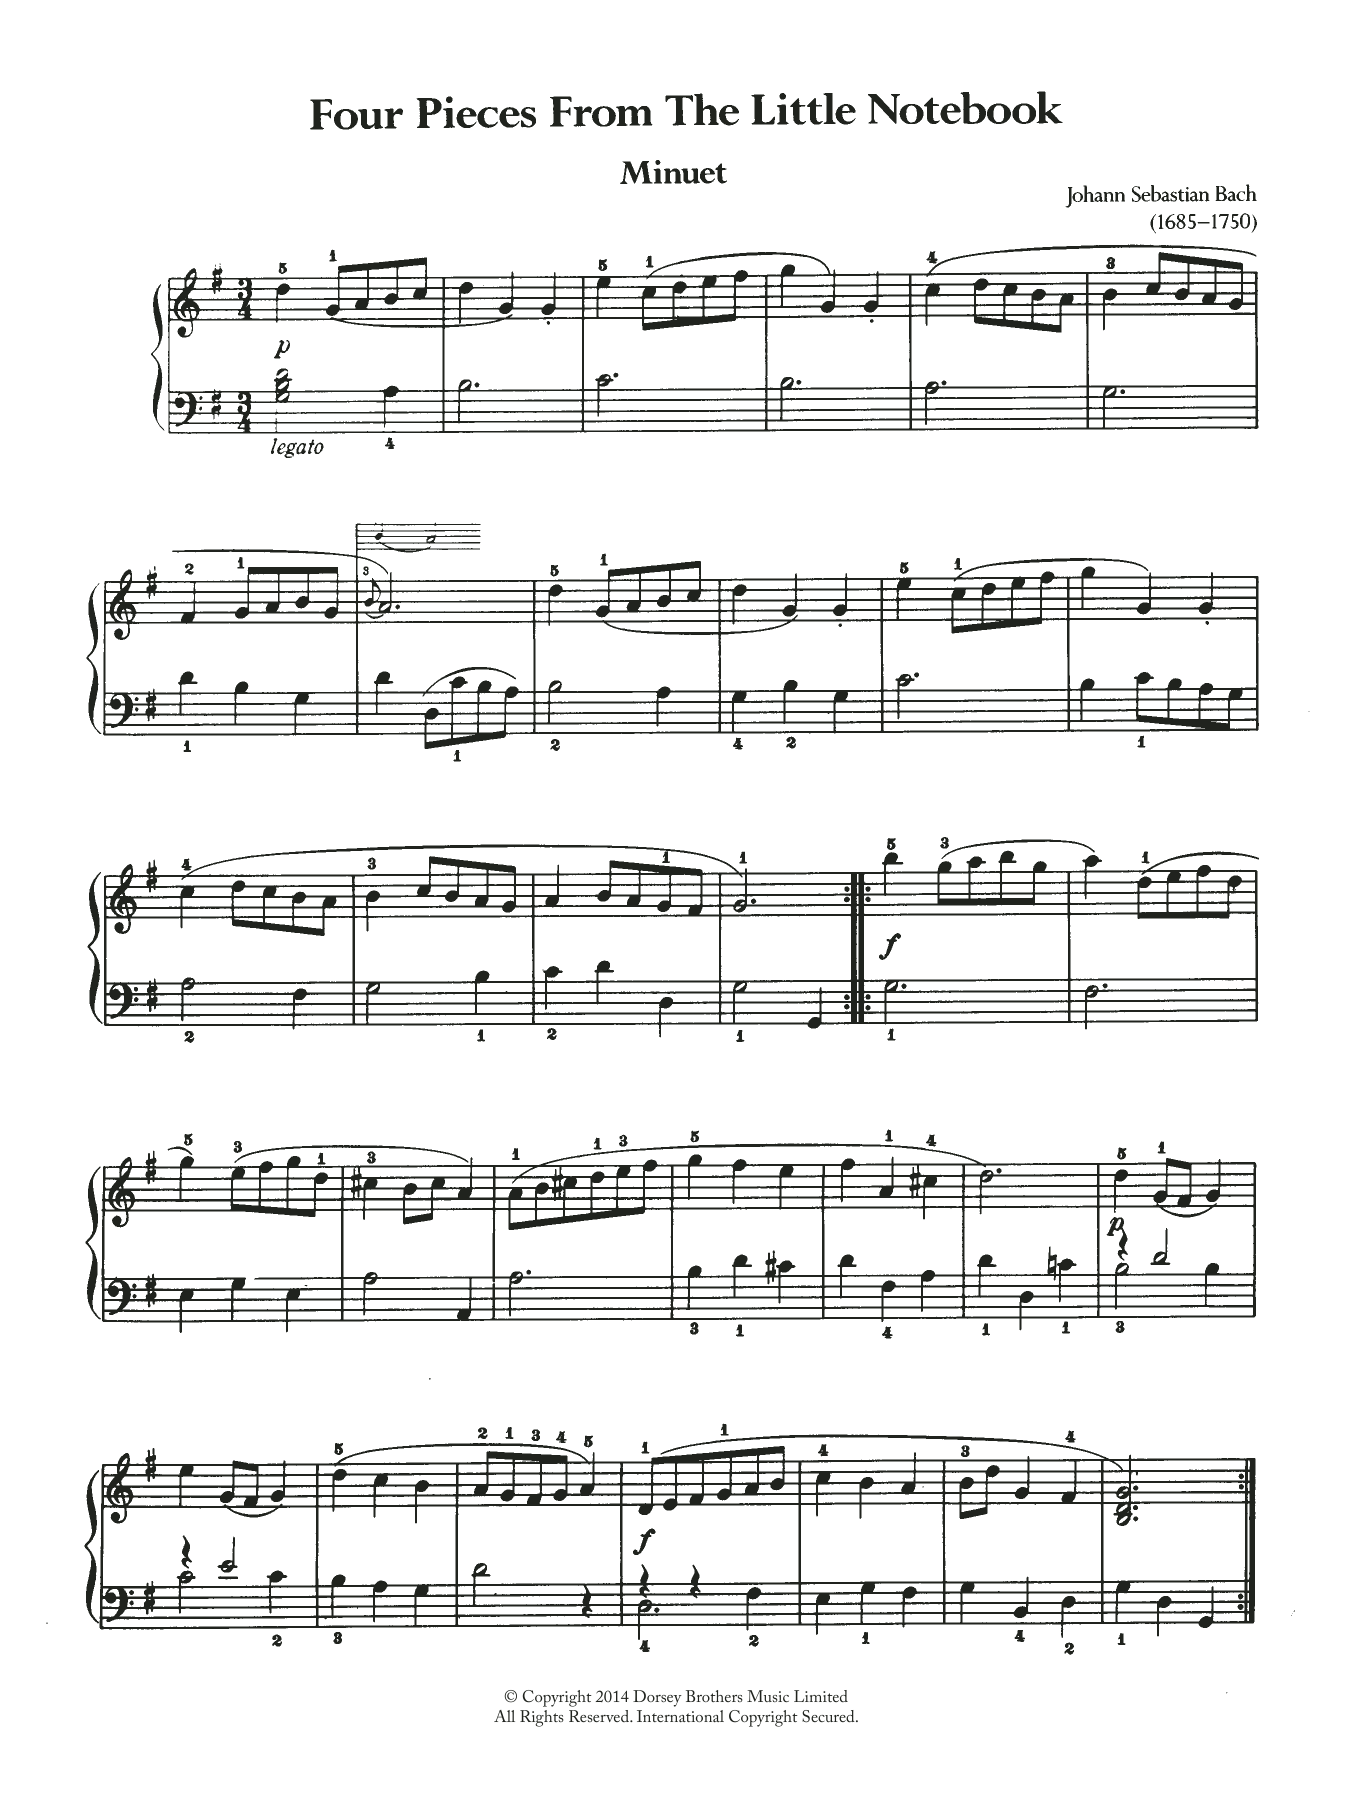 Download Johann Sebastian Bach Four Pieces From The Little Notebook Sheet Music